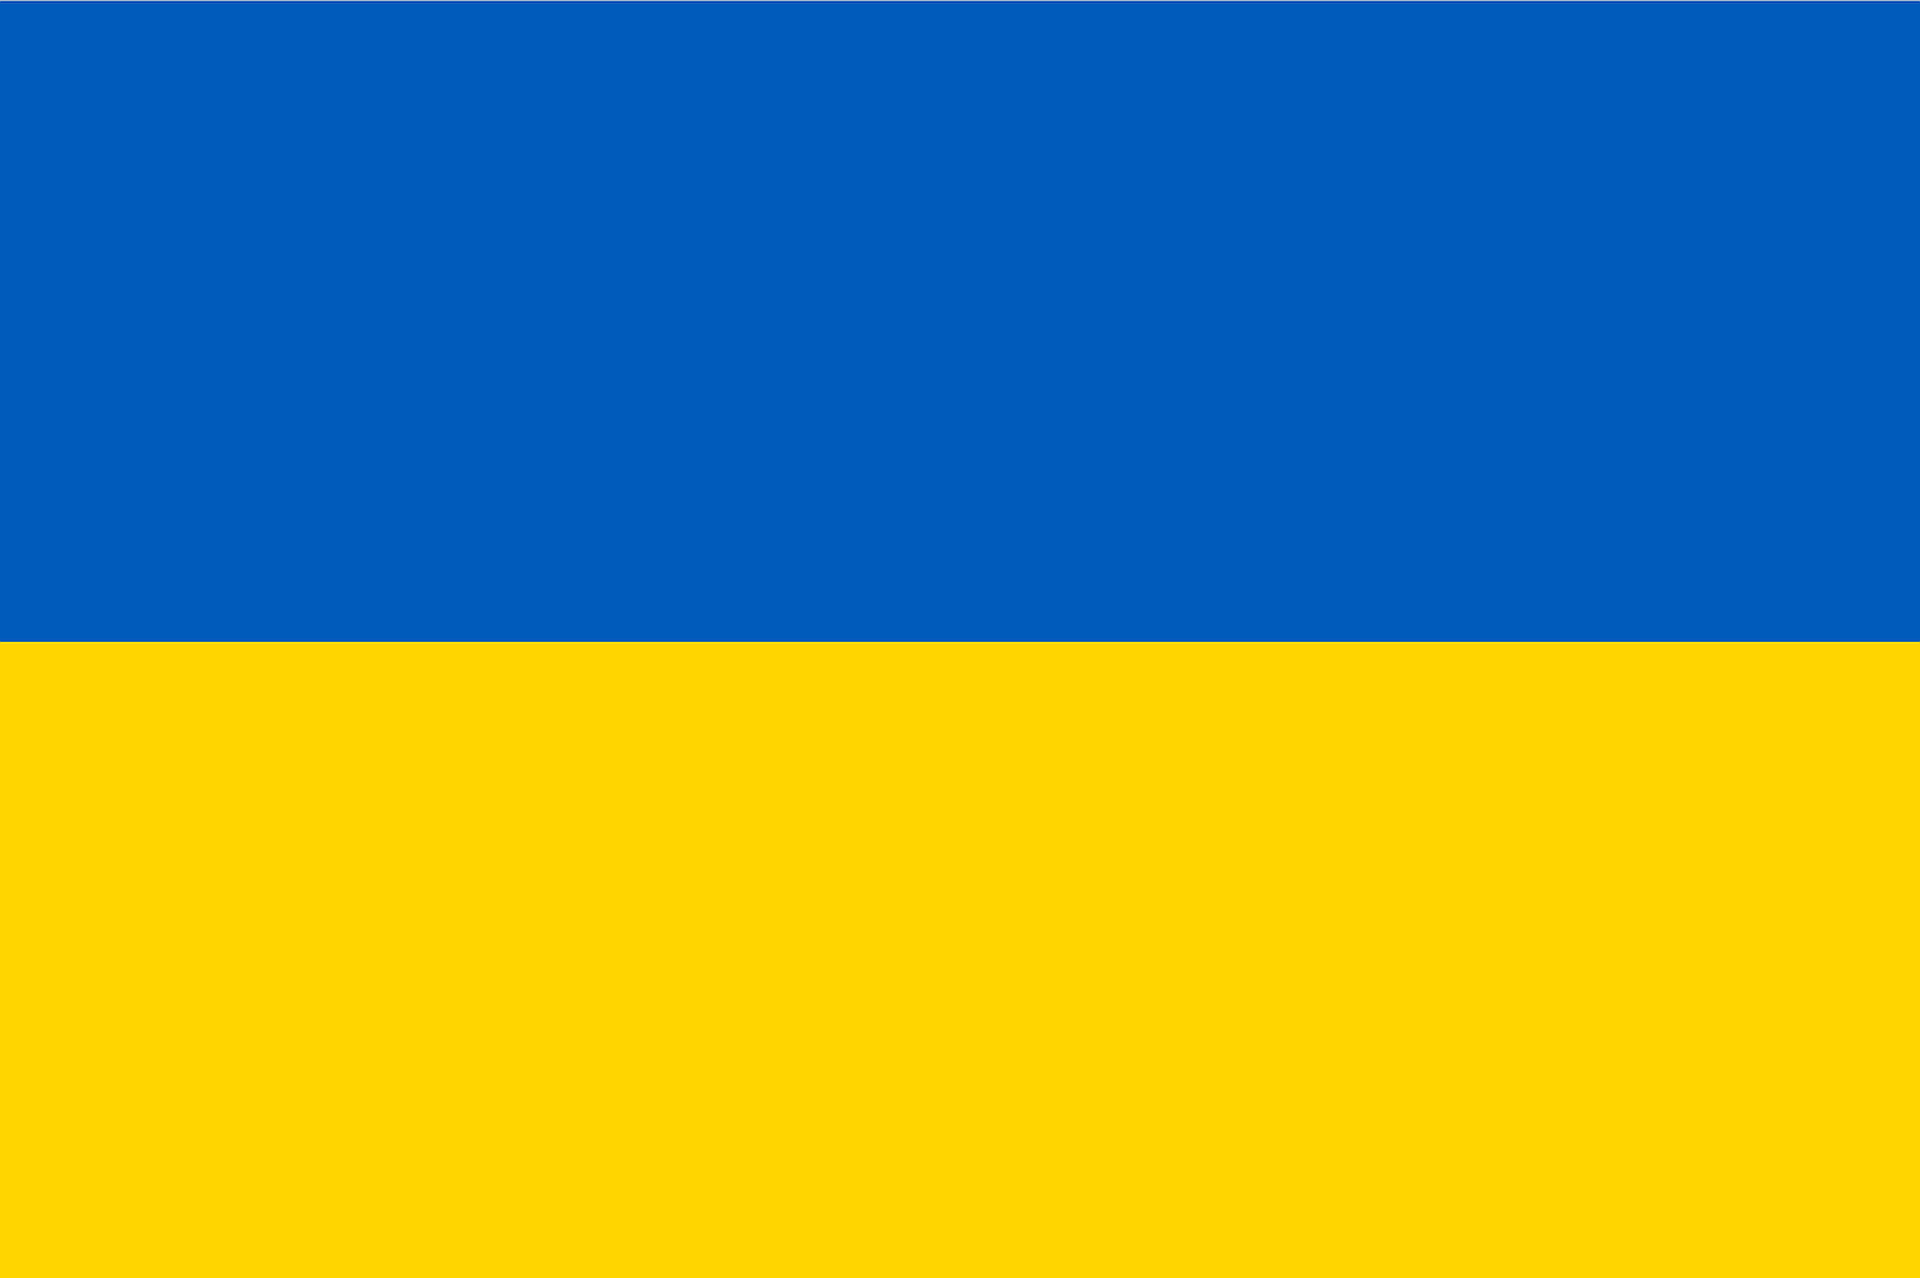 Ilustracja przedstawia flagę Ukrainy.  Prostokątny symbol został podzielony na dwa poziome pasy: niebieski i żółty. 